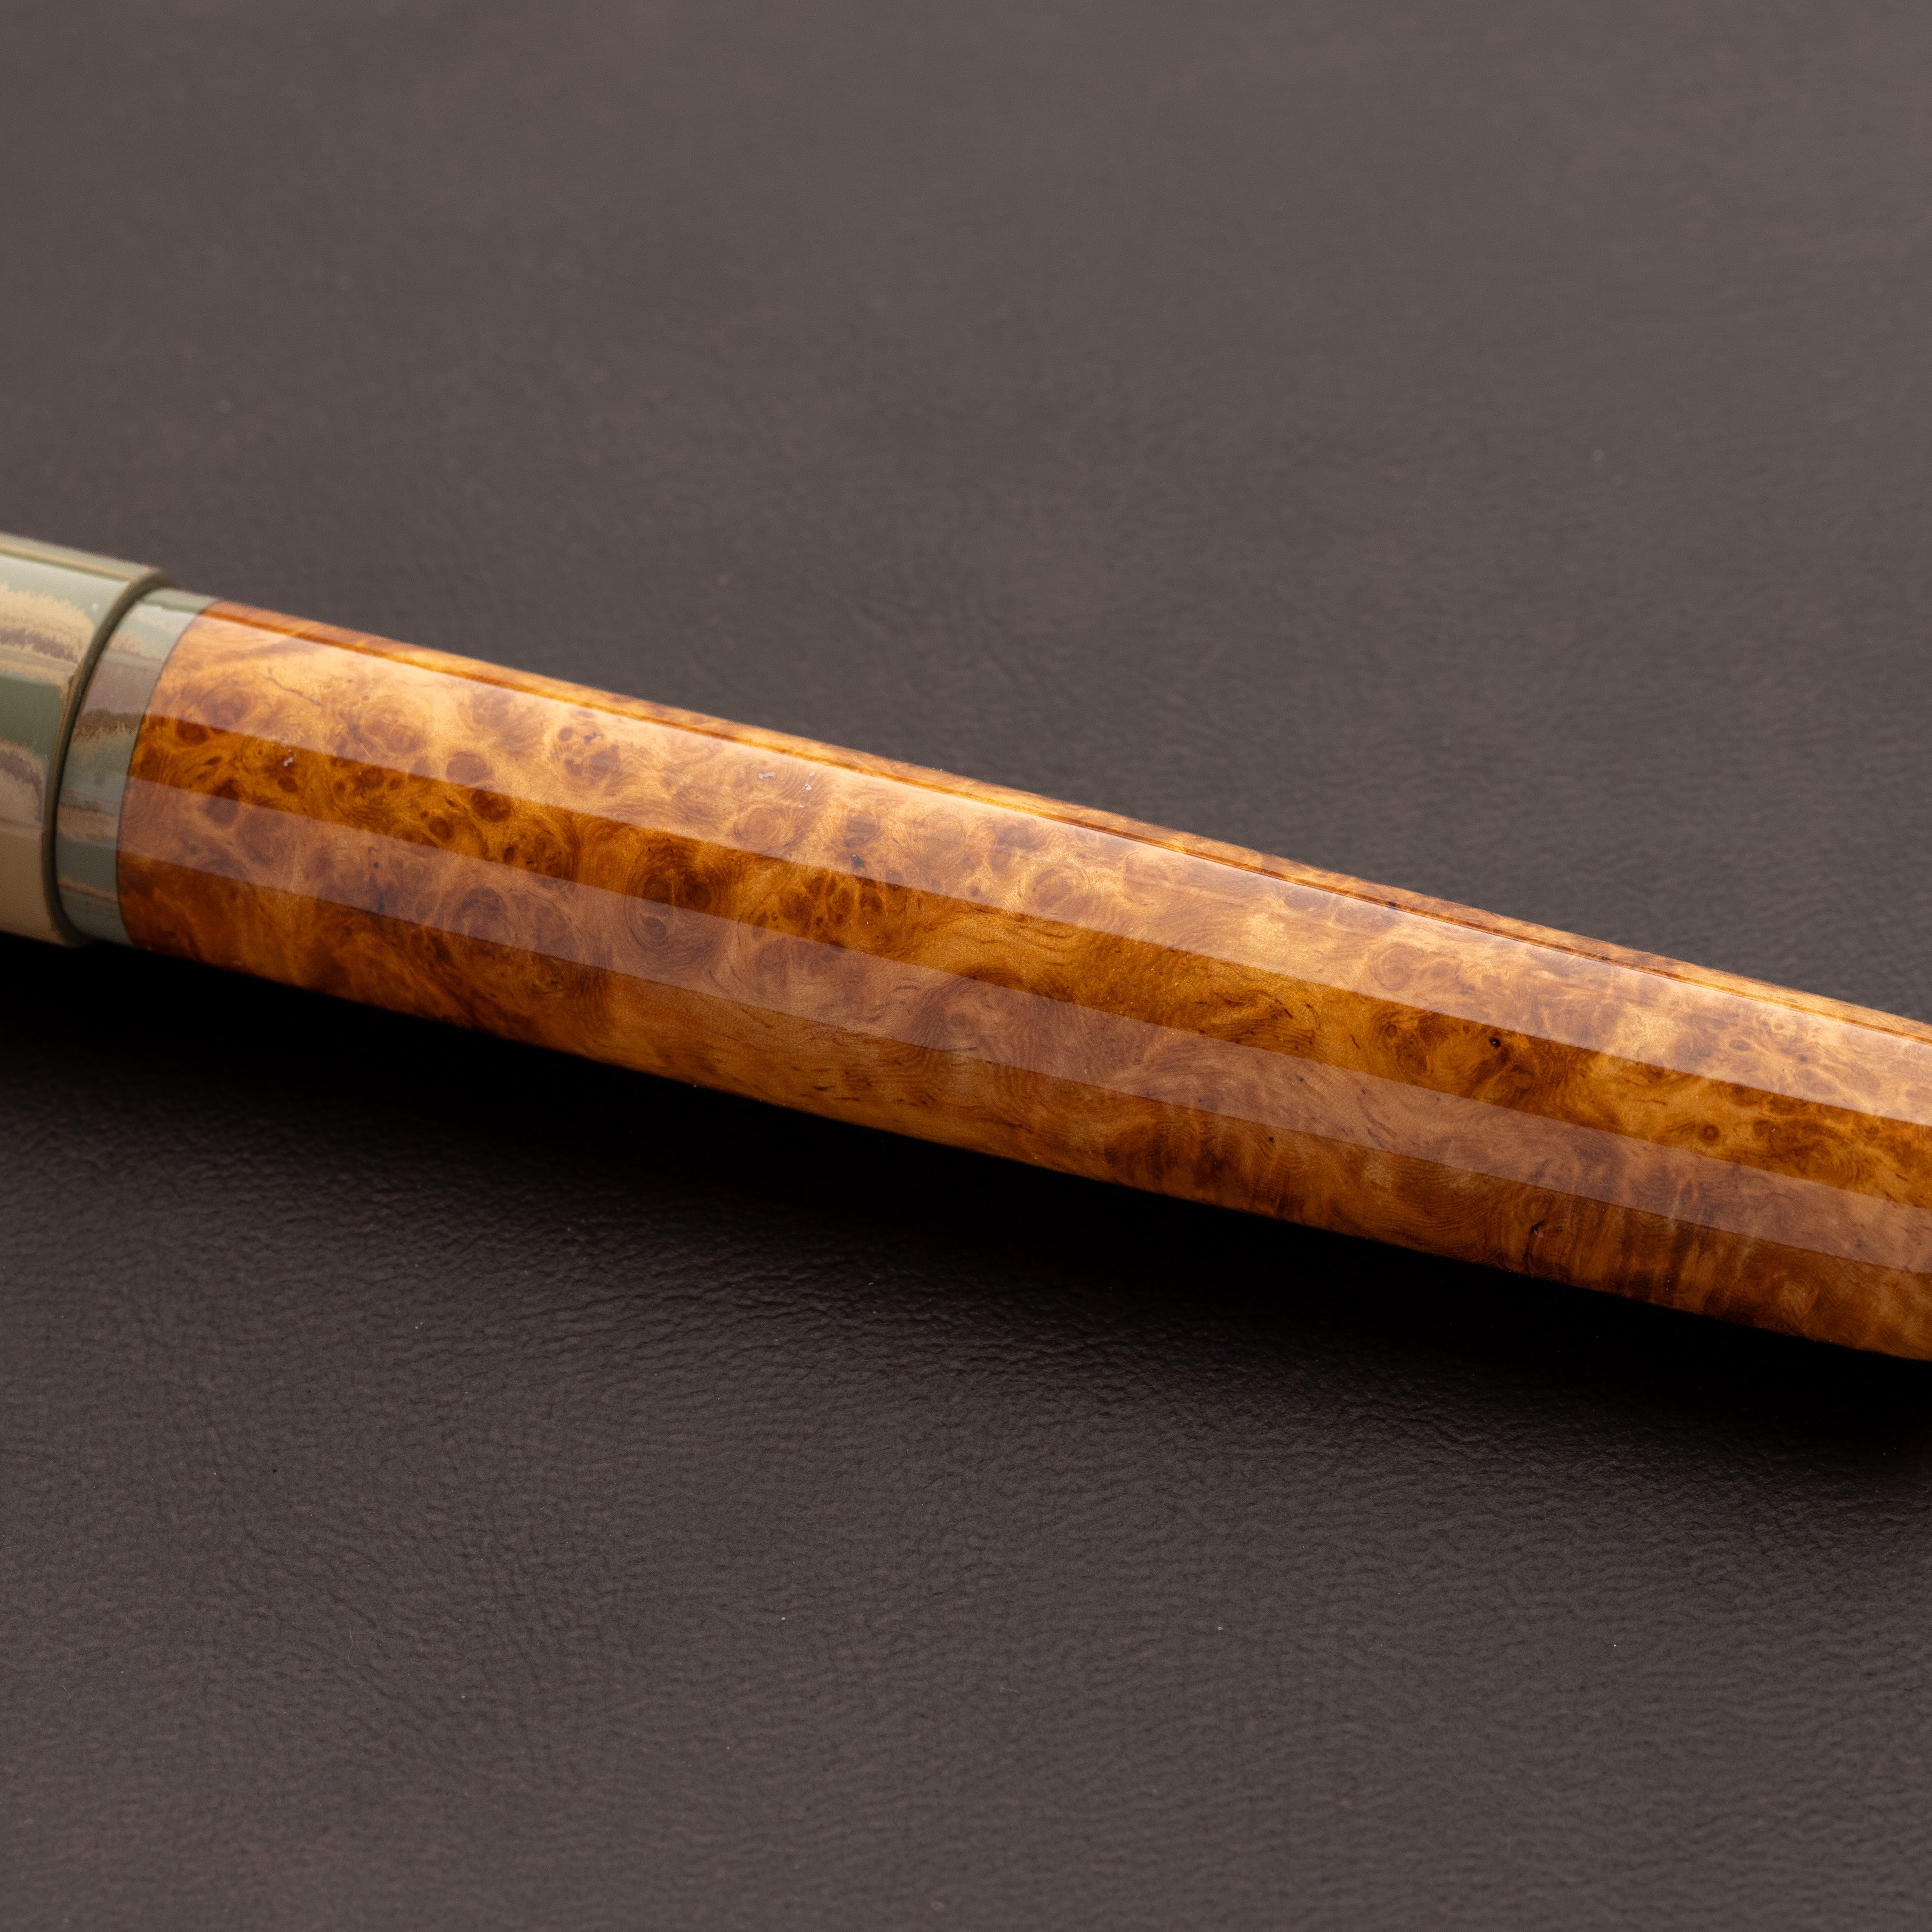 Fountain Pen - Bock #6 - 14 mm - Thuya wood and SEM Ebonite